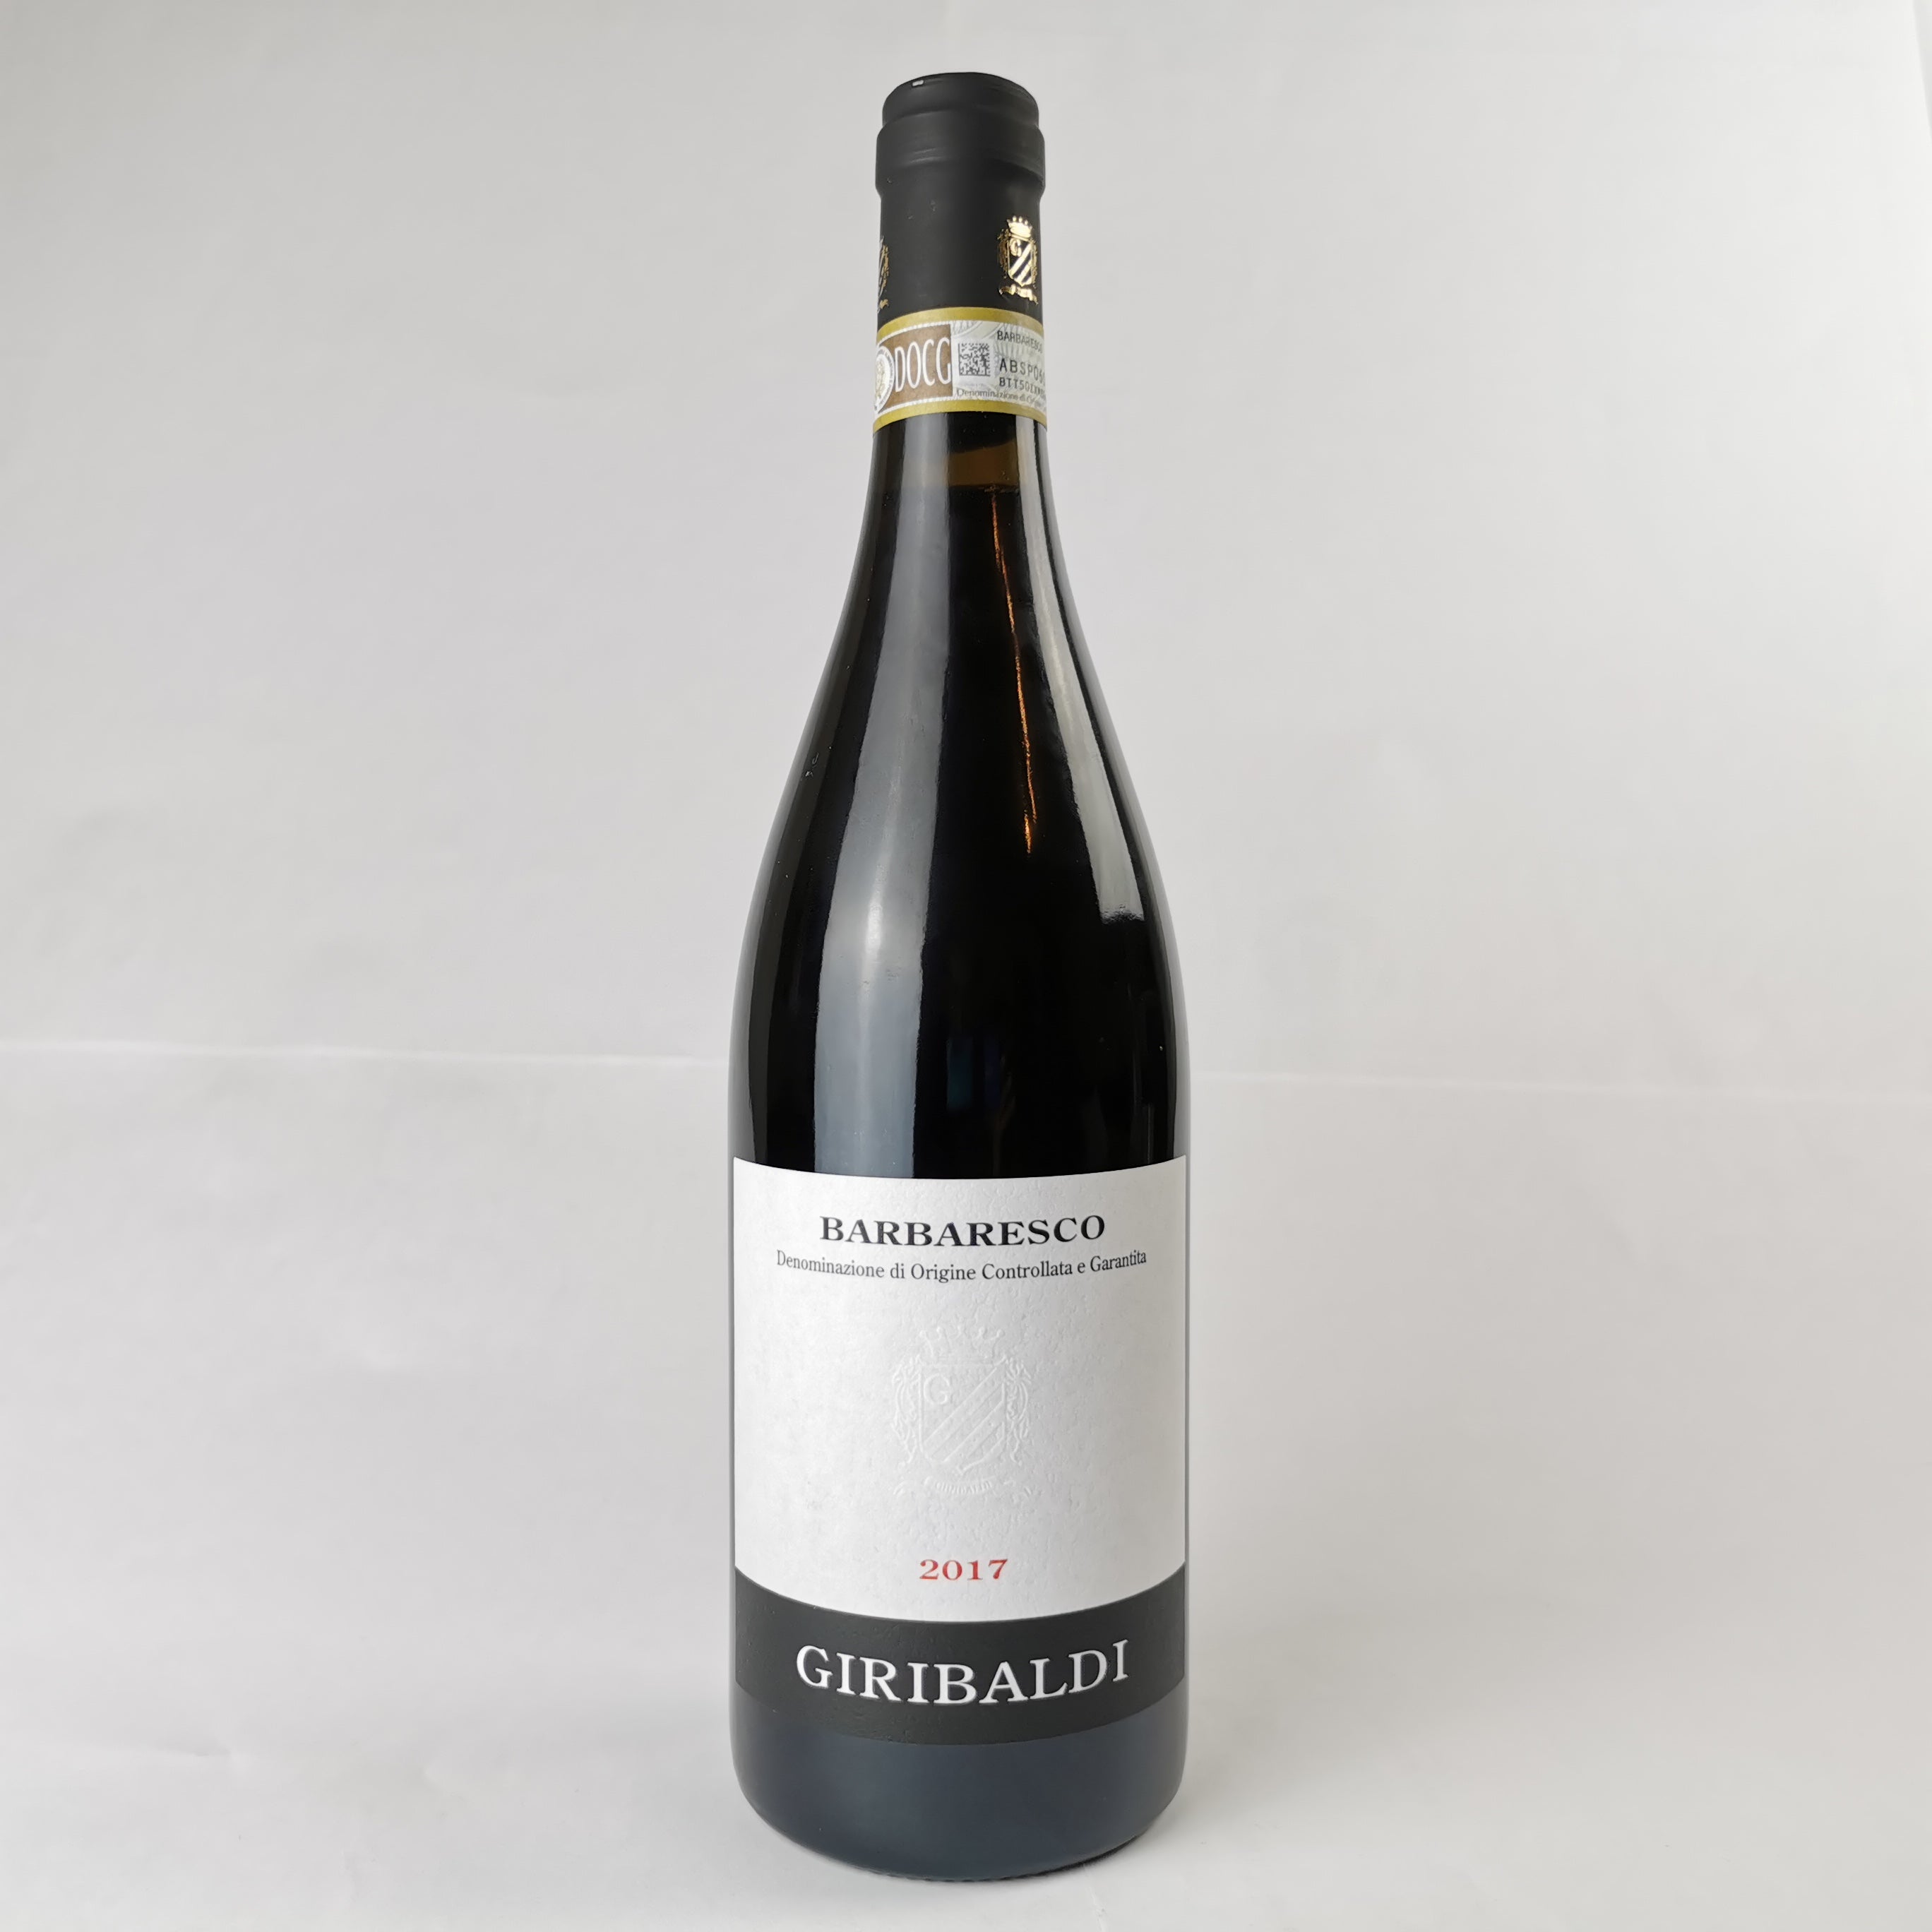 Italienischer Wein - Premium Rotweinpaket - Barolo, Barbaresco, Nebbiolo (3 Fl.)